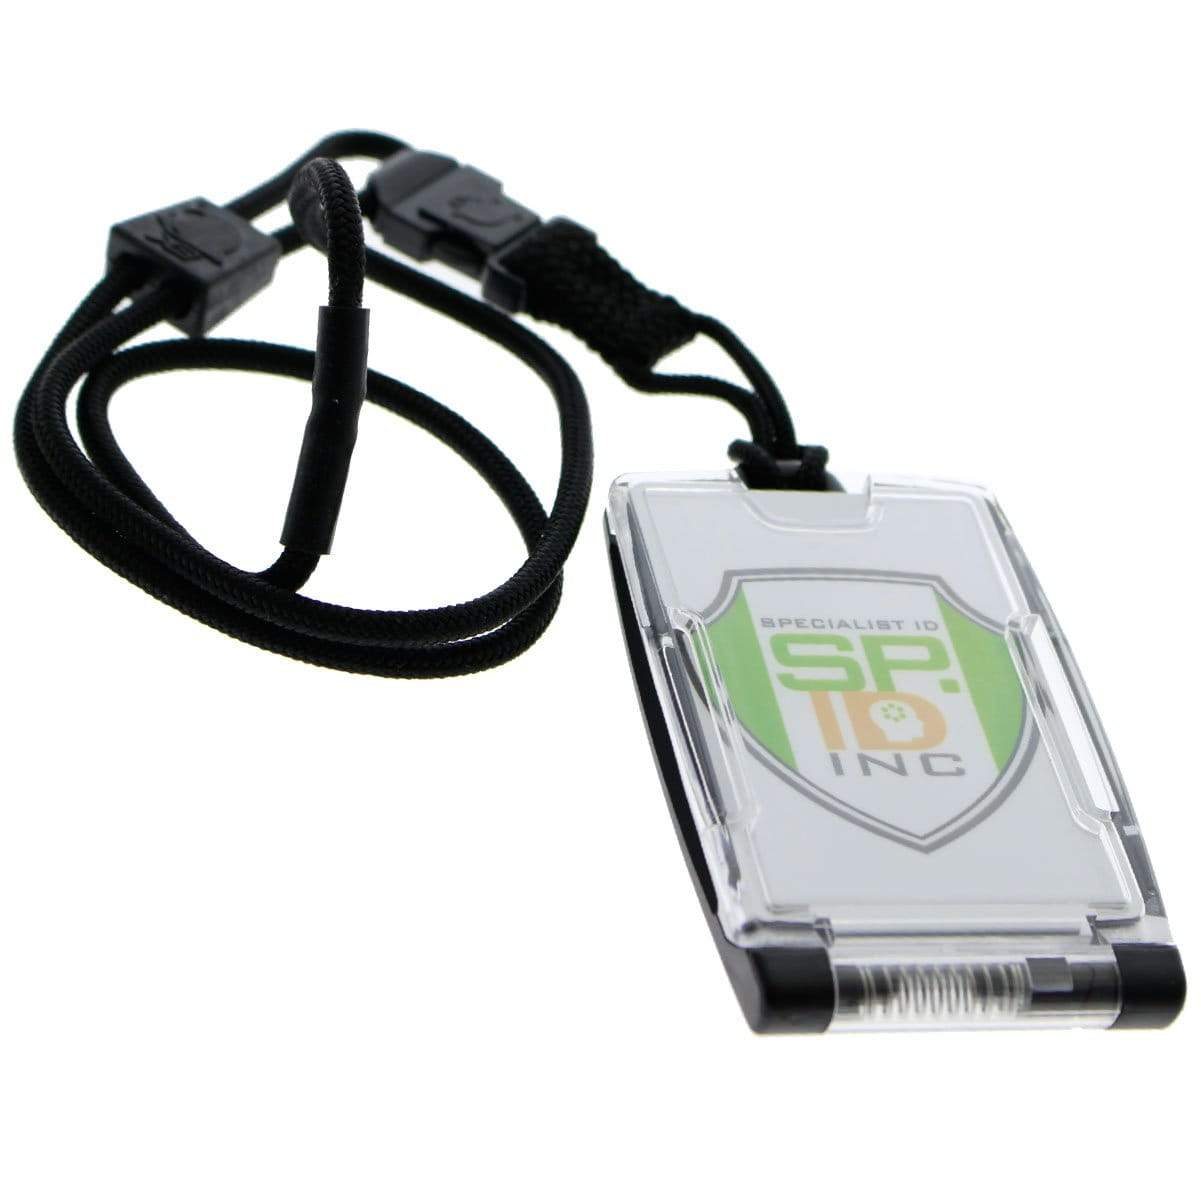 Personalizado personalizado Hip Llama con gafas 1 línea Lanyard retráctil  Reel Badge ID Card Holder